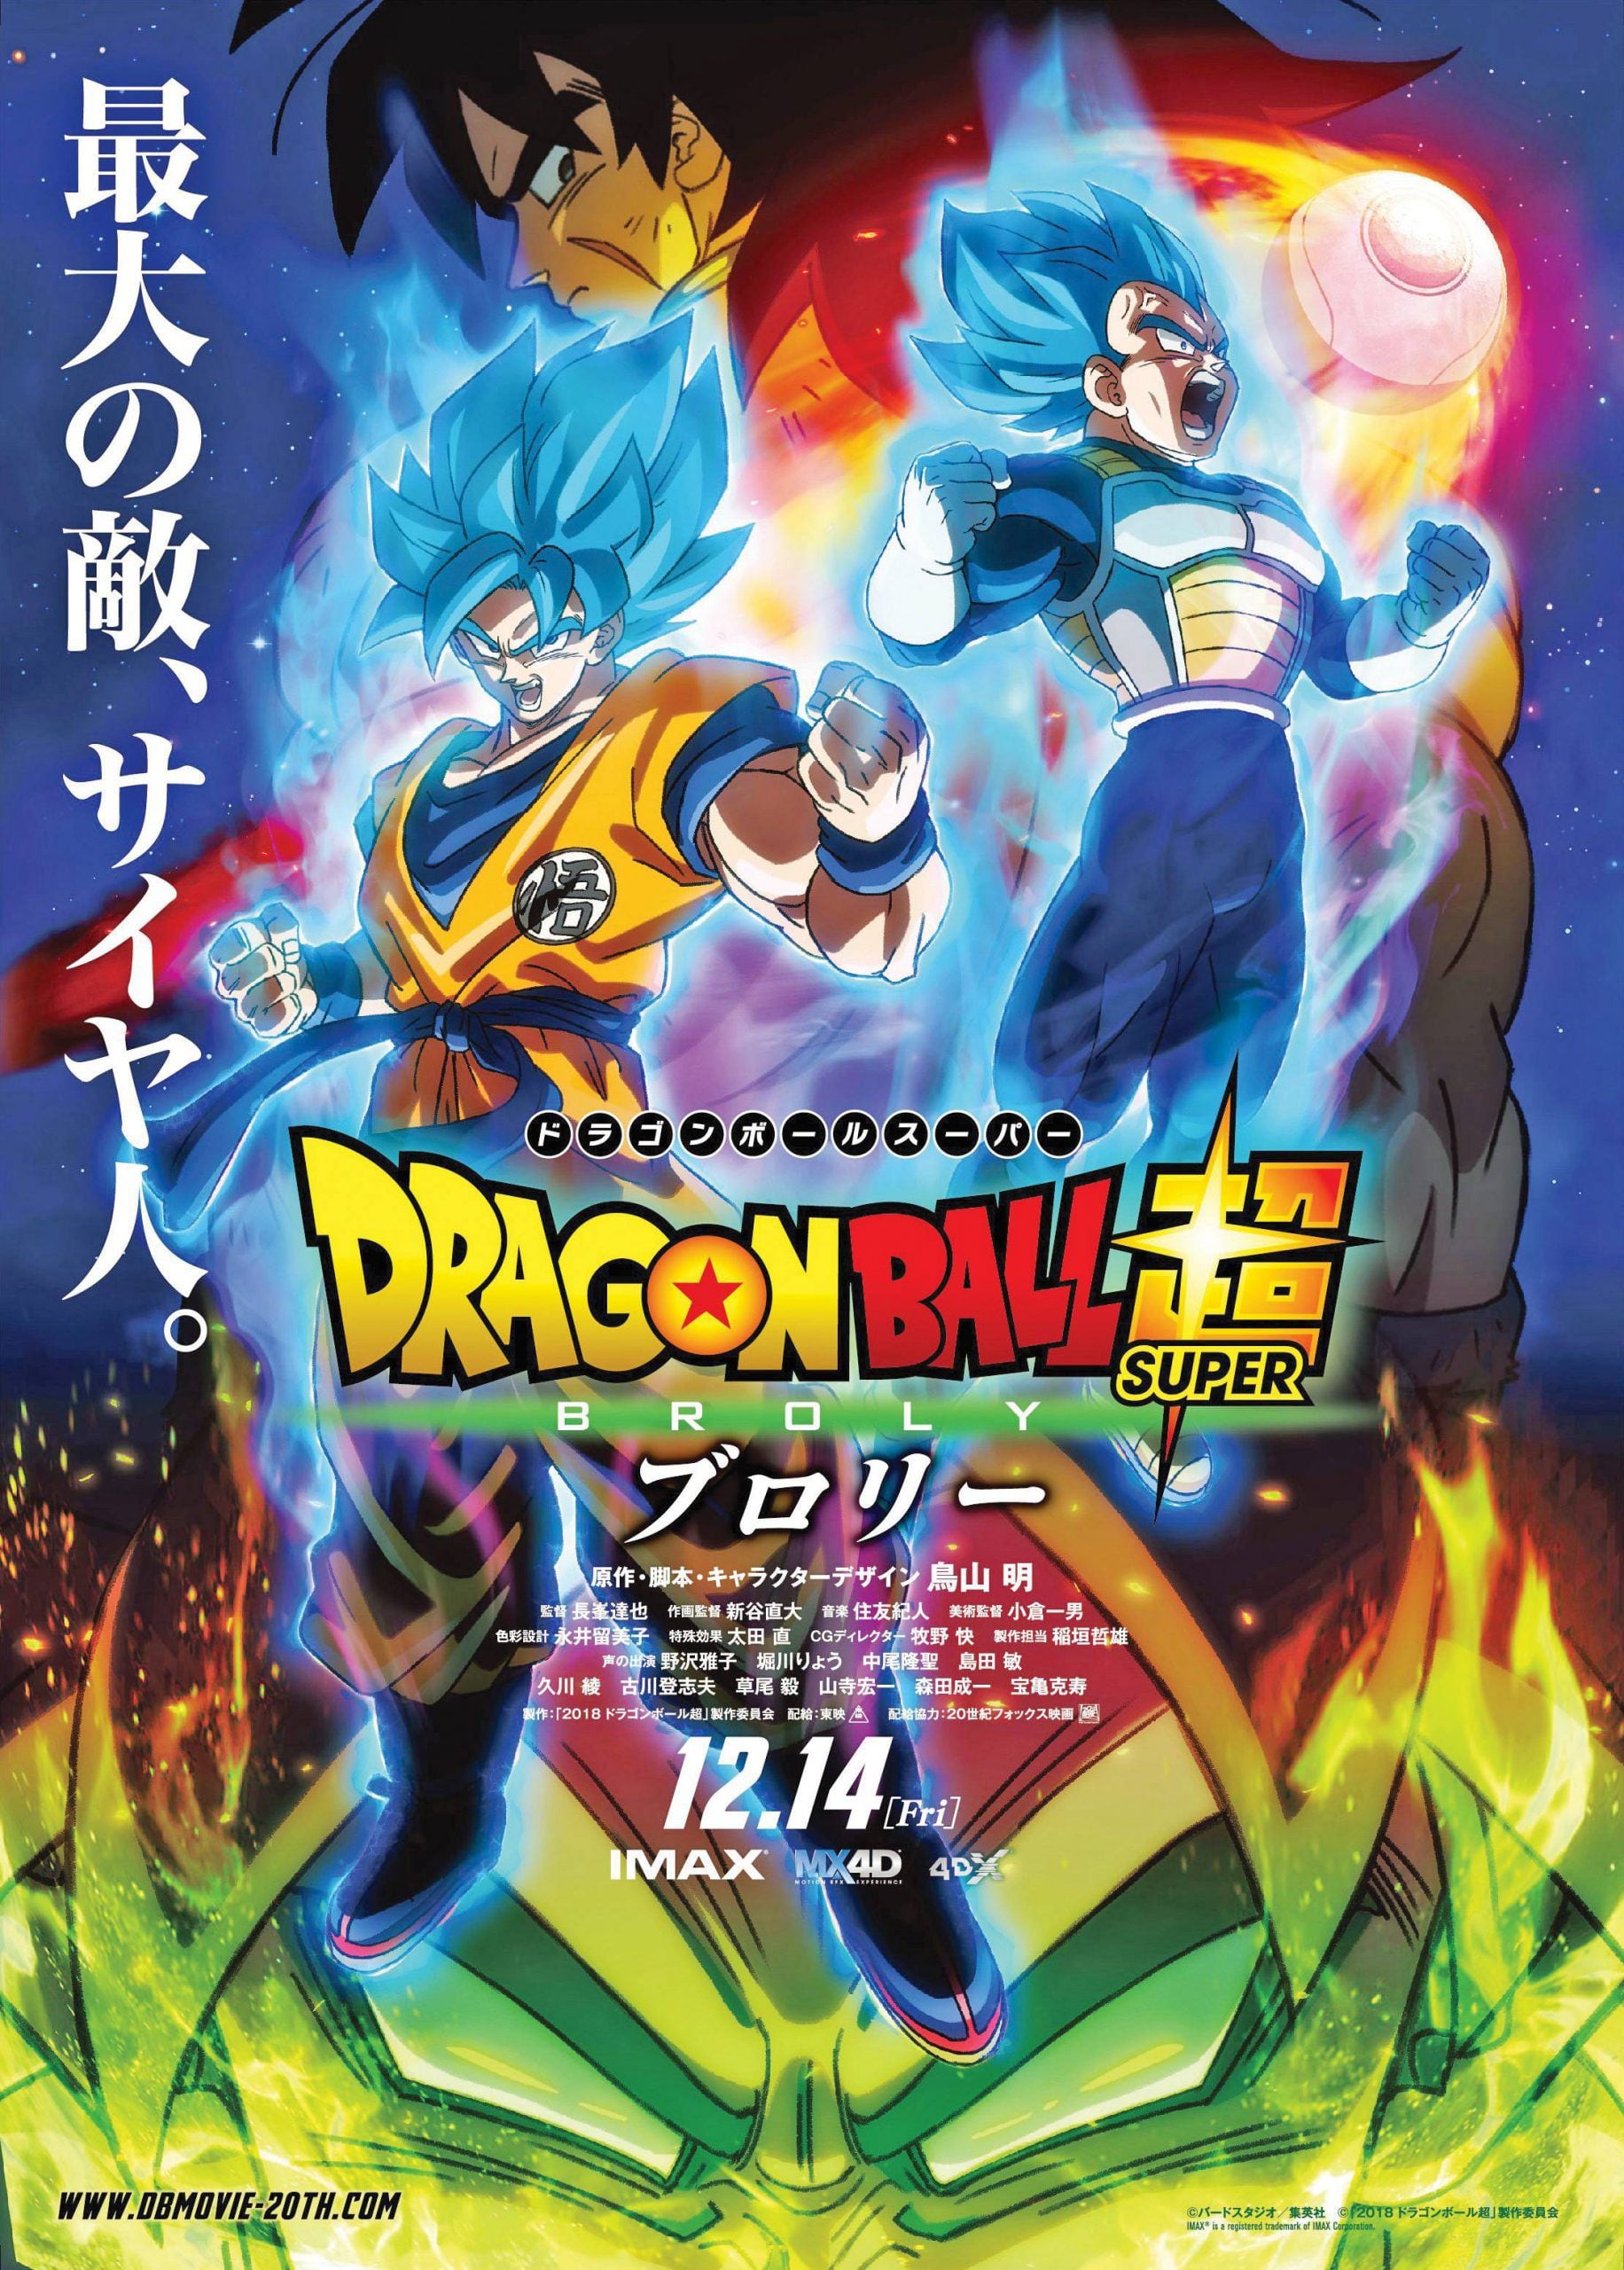  Crunchyroll estreia mais 6 filmes de Dragon Ball Z